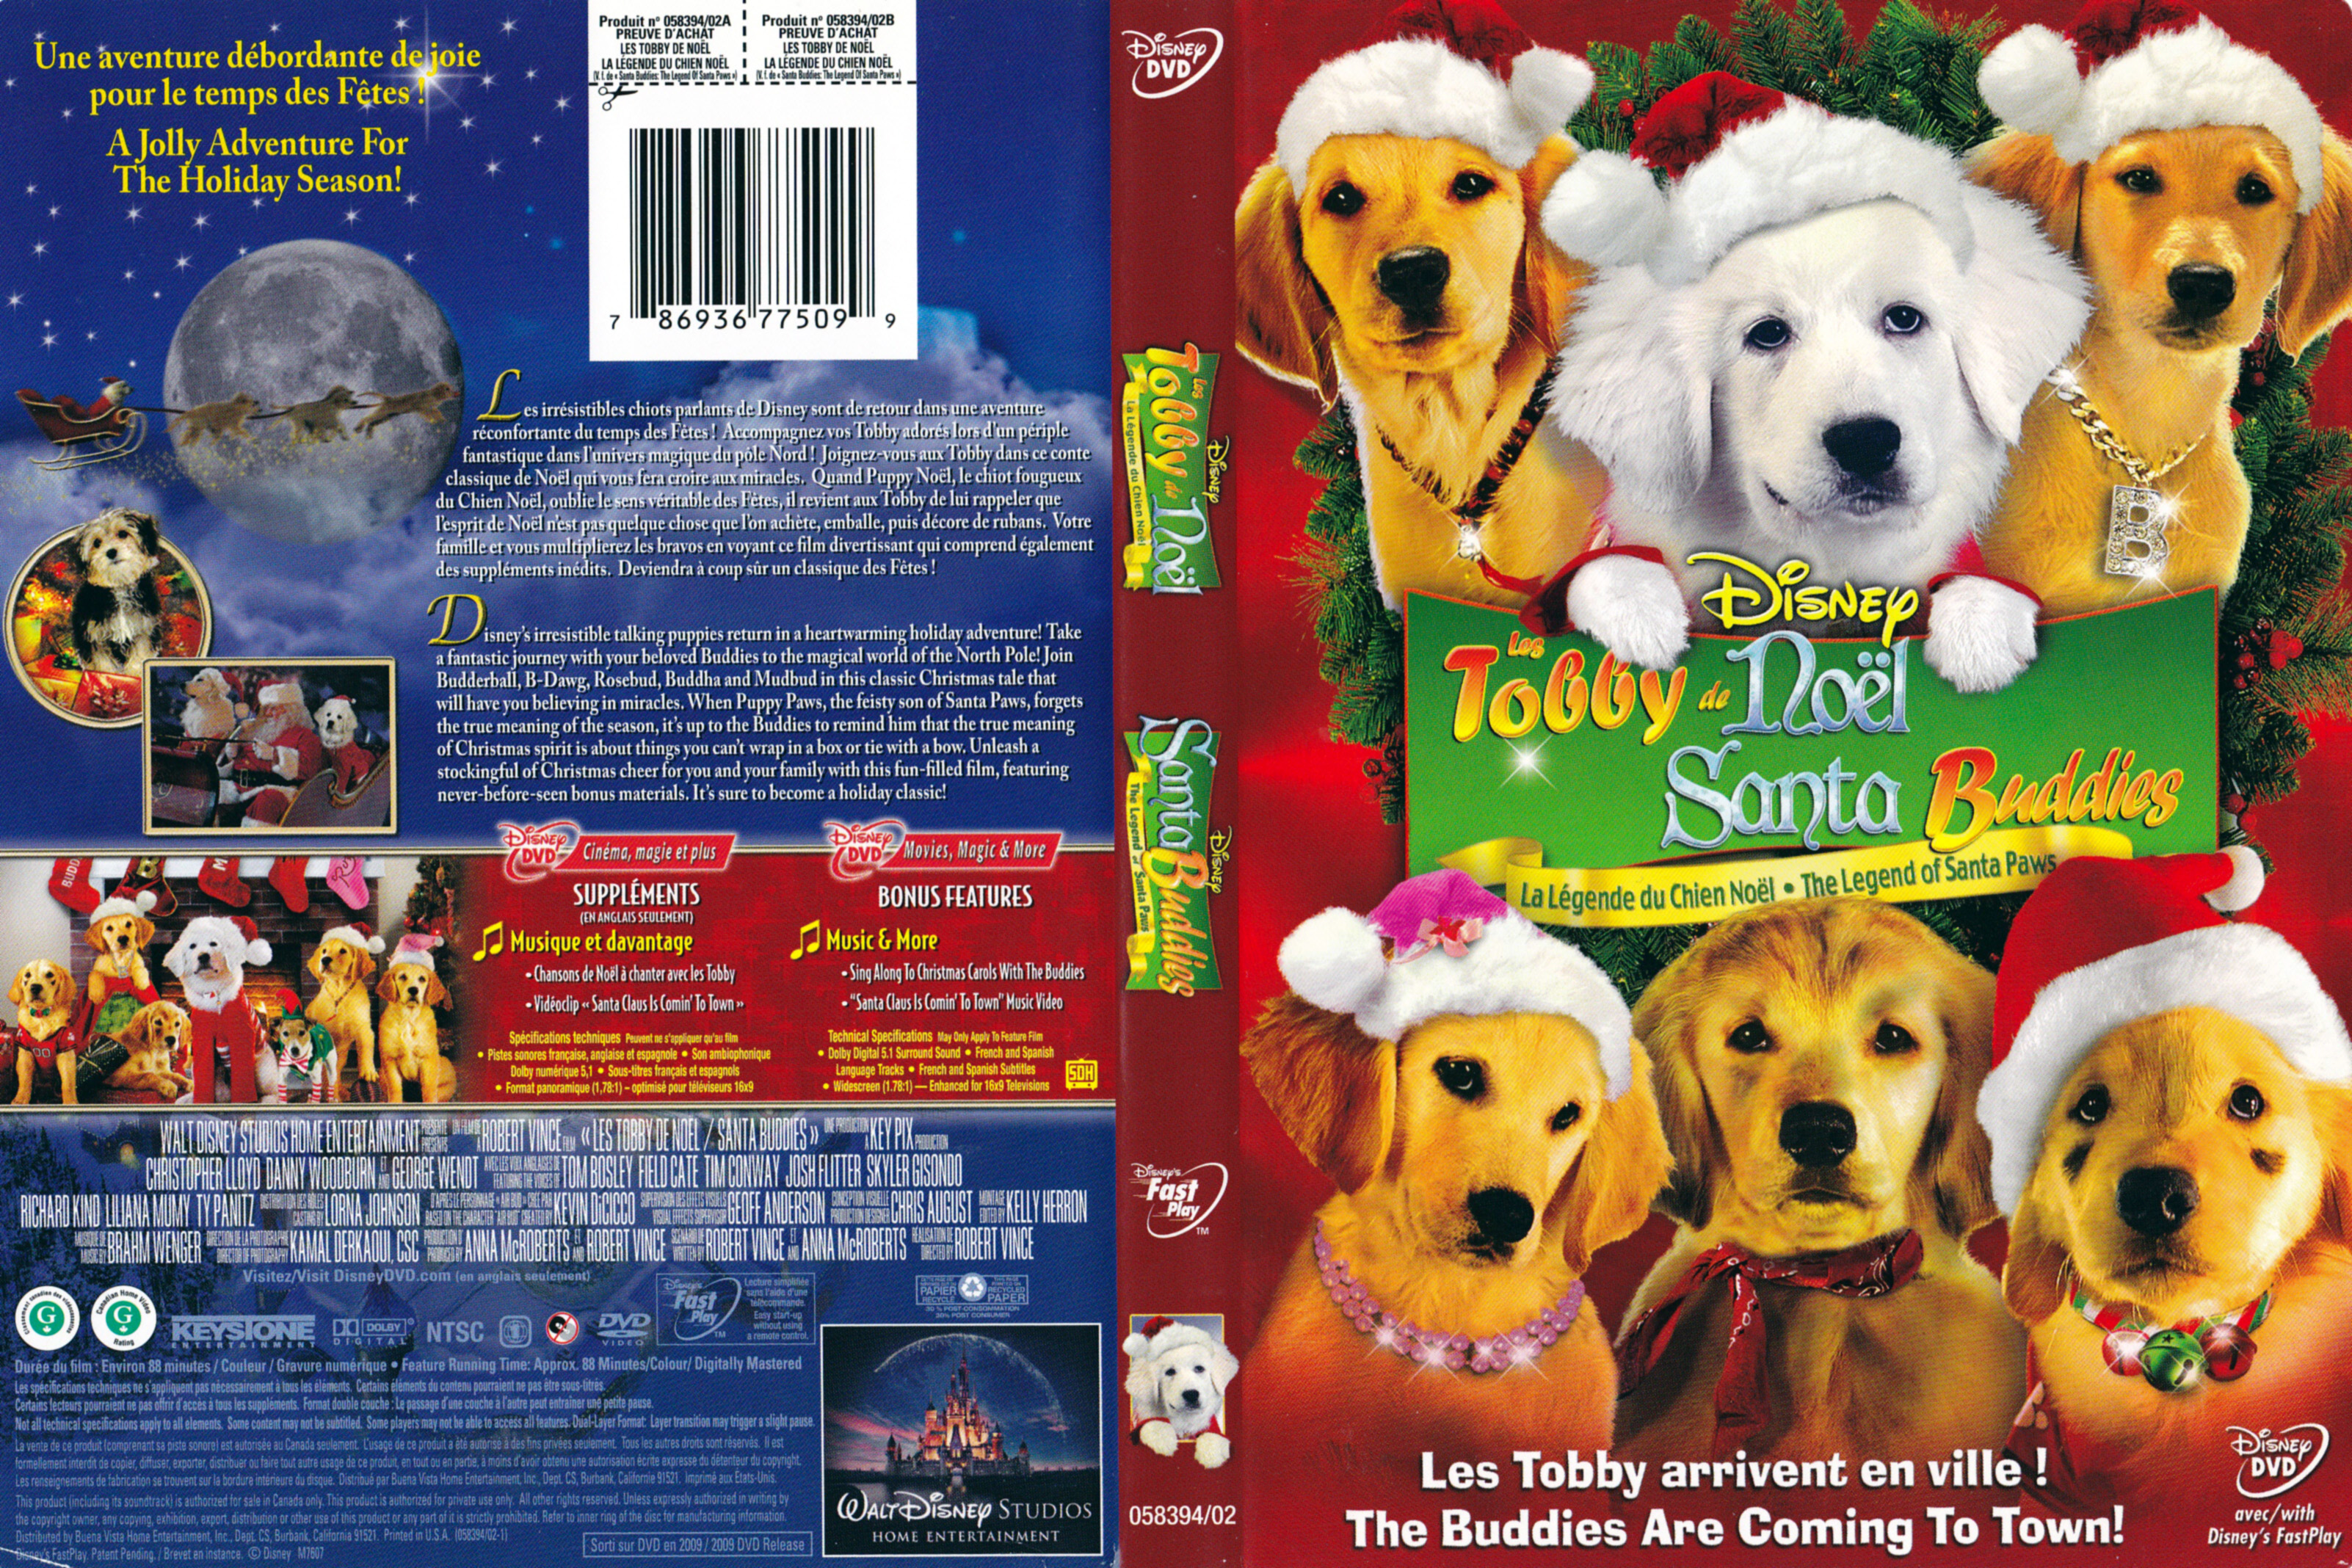 Jaquette DVD Les tobby de Nol - Santa buddies (Canadienne